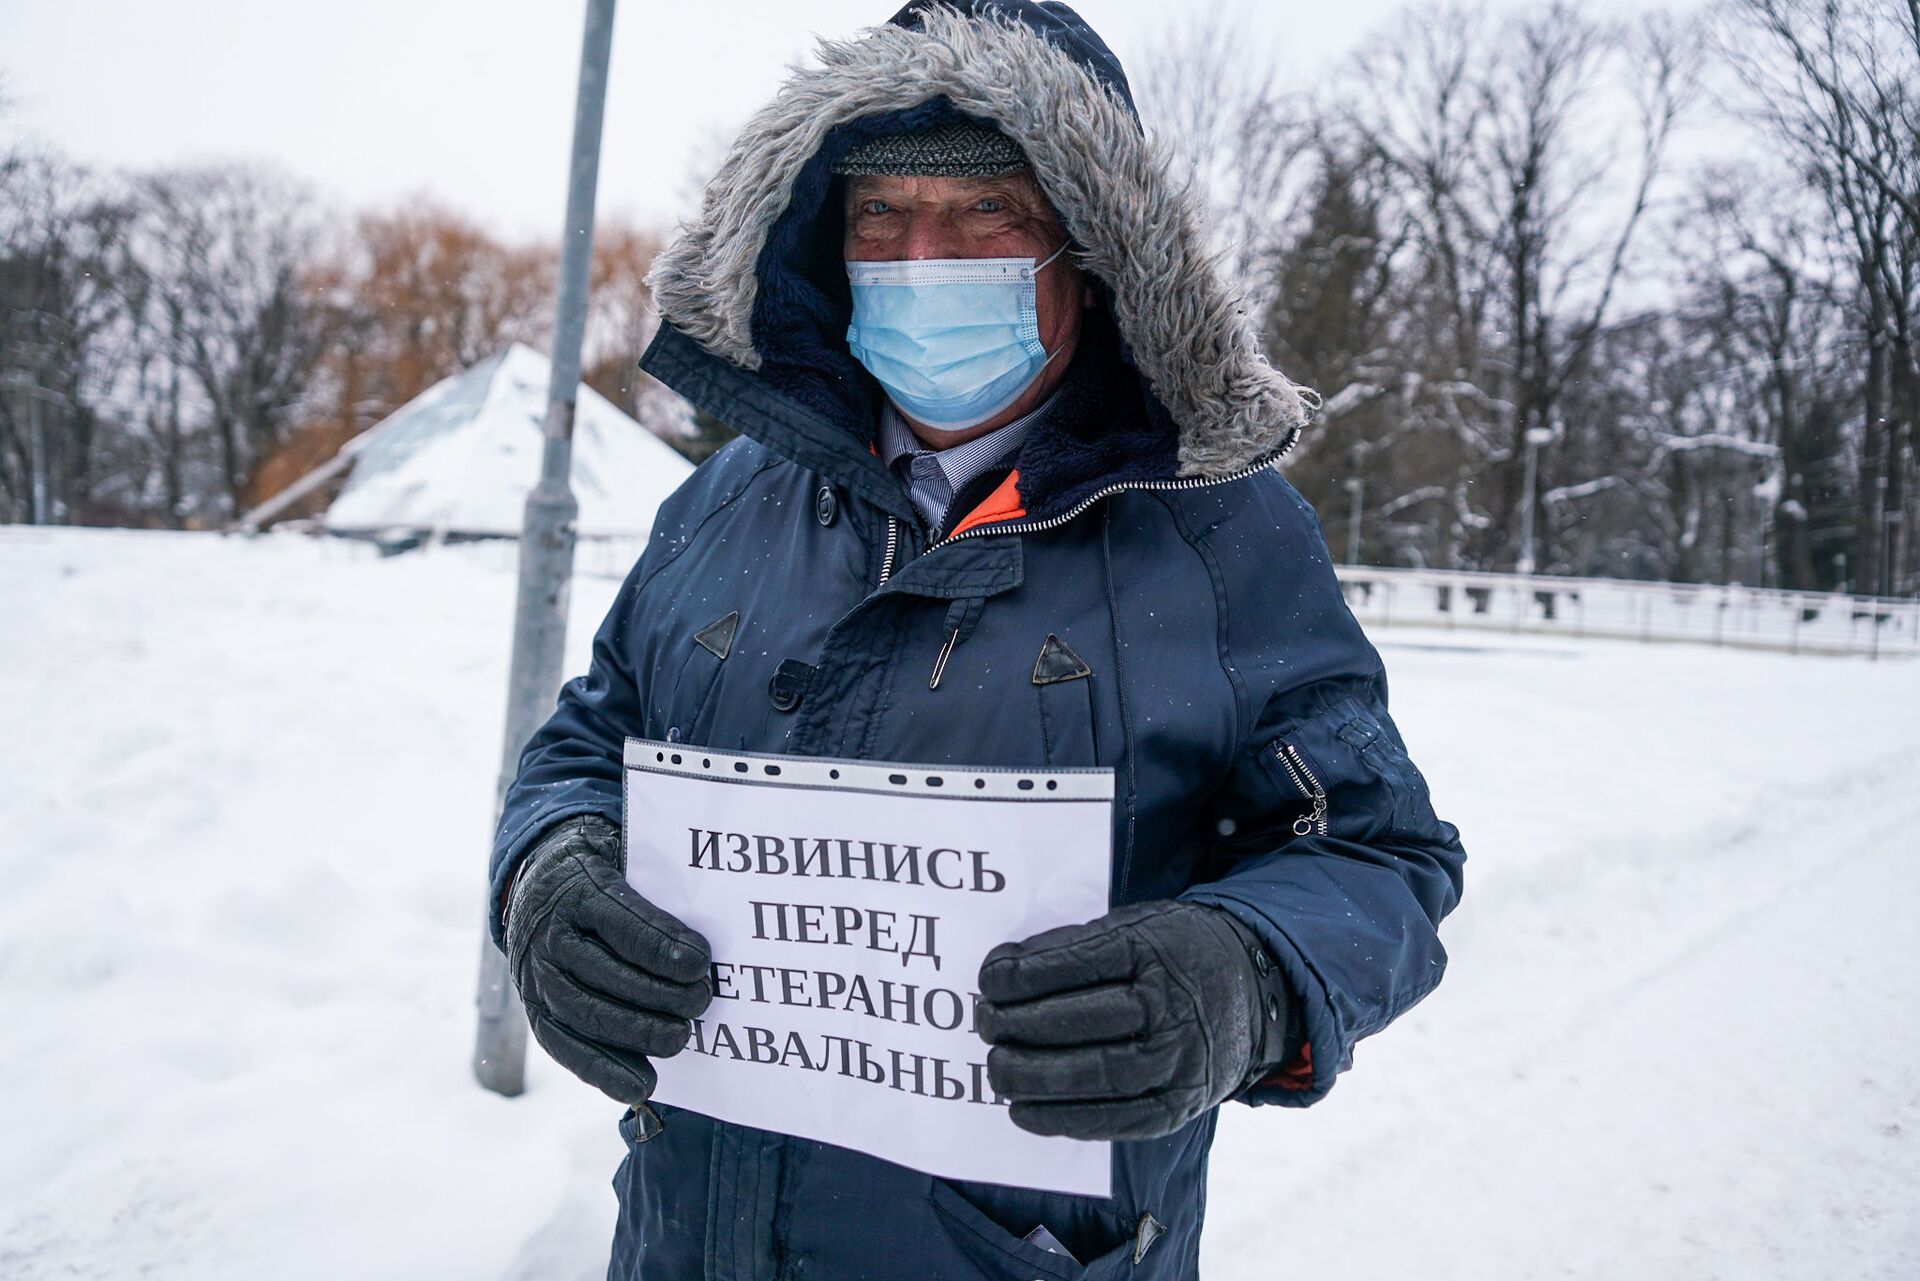 Извинись перед ветераном, Навальный: пенсионеры вышли с пикетом к посольству РФ в Риге - Sputnik Латвия, 1920, 12.02.2021